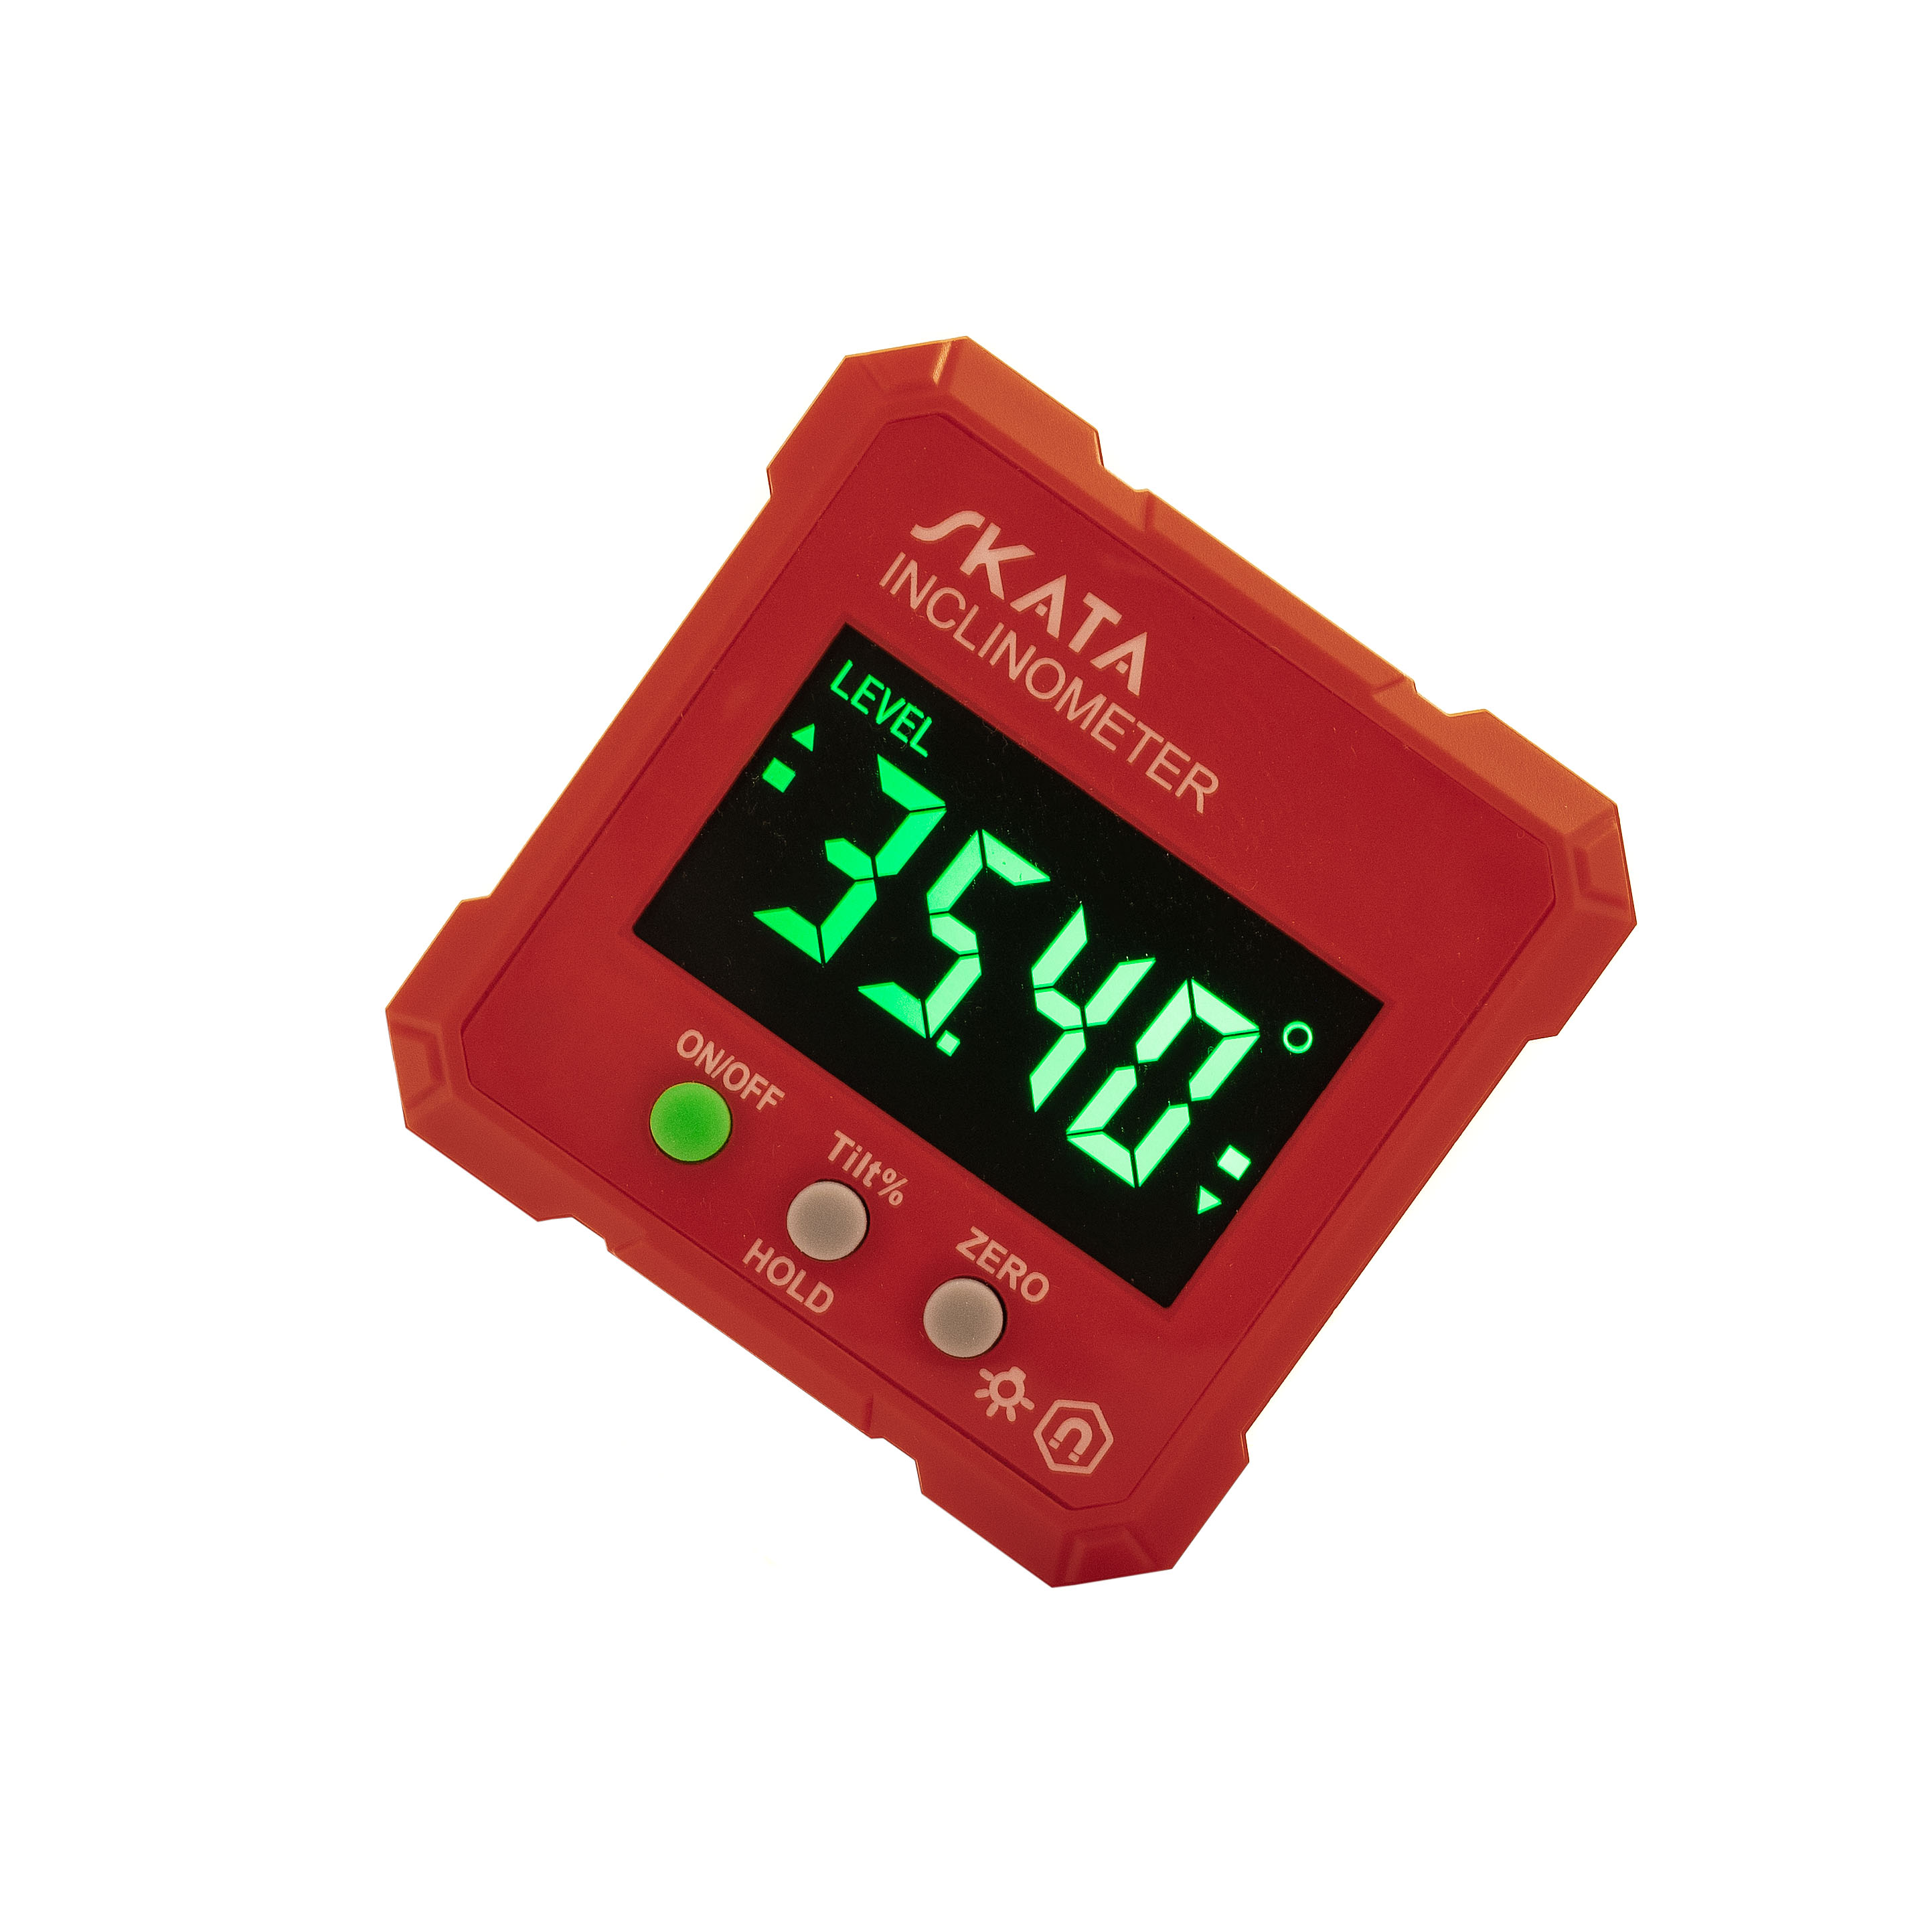 Угломер электронный с магнитным основанием, SKATA Inclinometer угломер цифровой deko dkam01 065 0244 с магнитным основанием